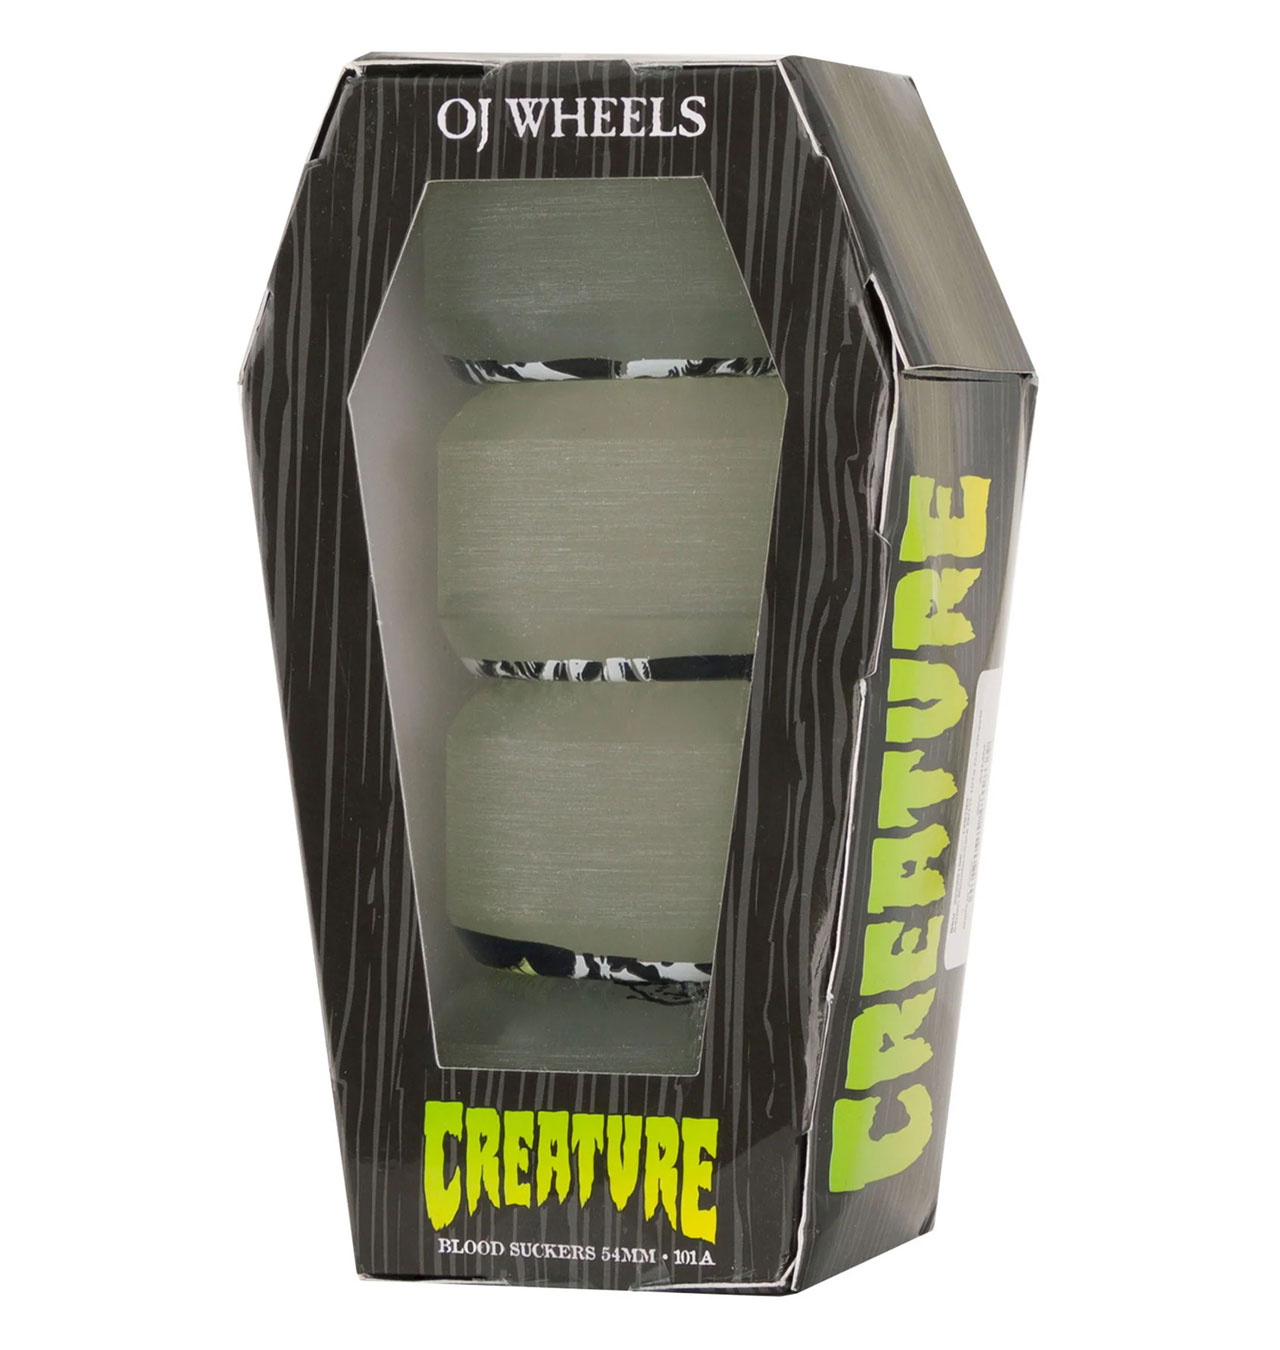 OJ Wheels - Creature Coffin Box Bloodsuckers 101a Skateboard Wheels - 54mm (Glow